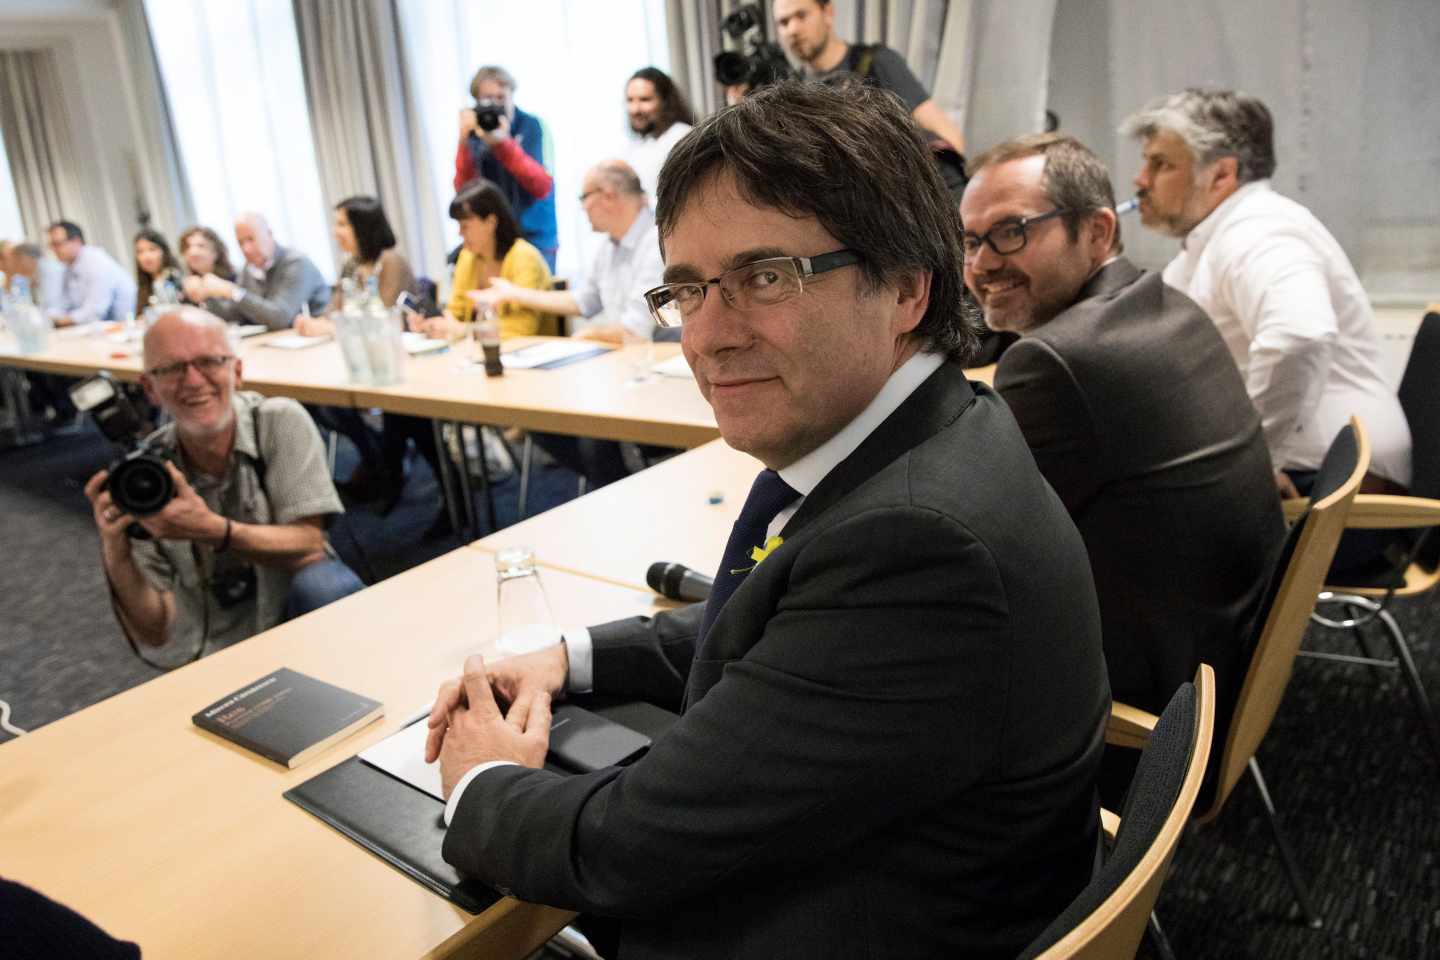 Puigdemont convoca a los suyos para anunciar mañana en Berlín el nombre del candidato